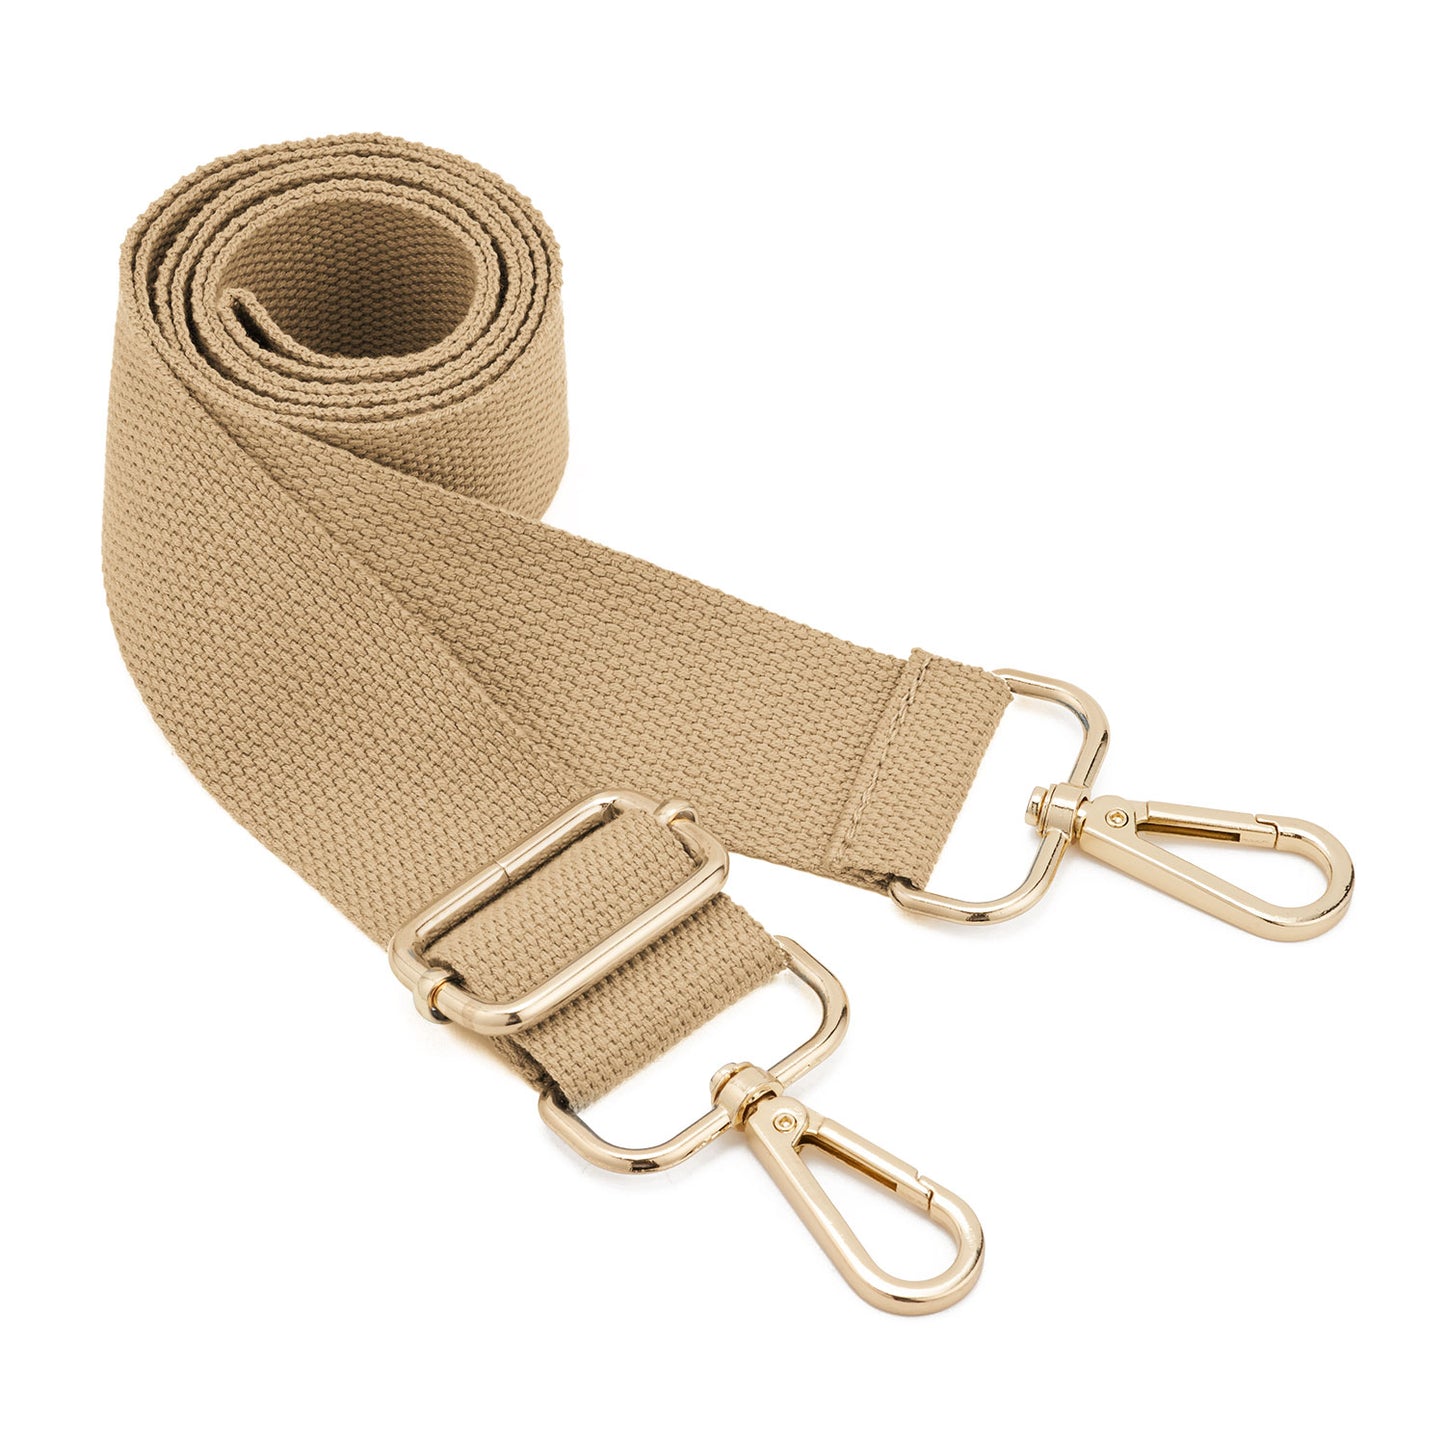 Adjustable Shoulder Strap For Handbags, Wide And Versatile